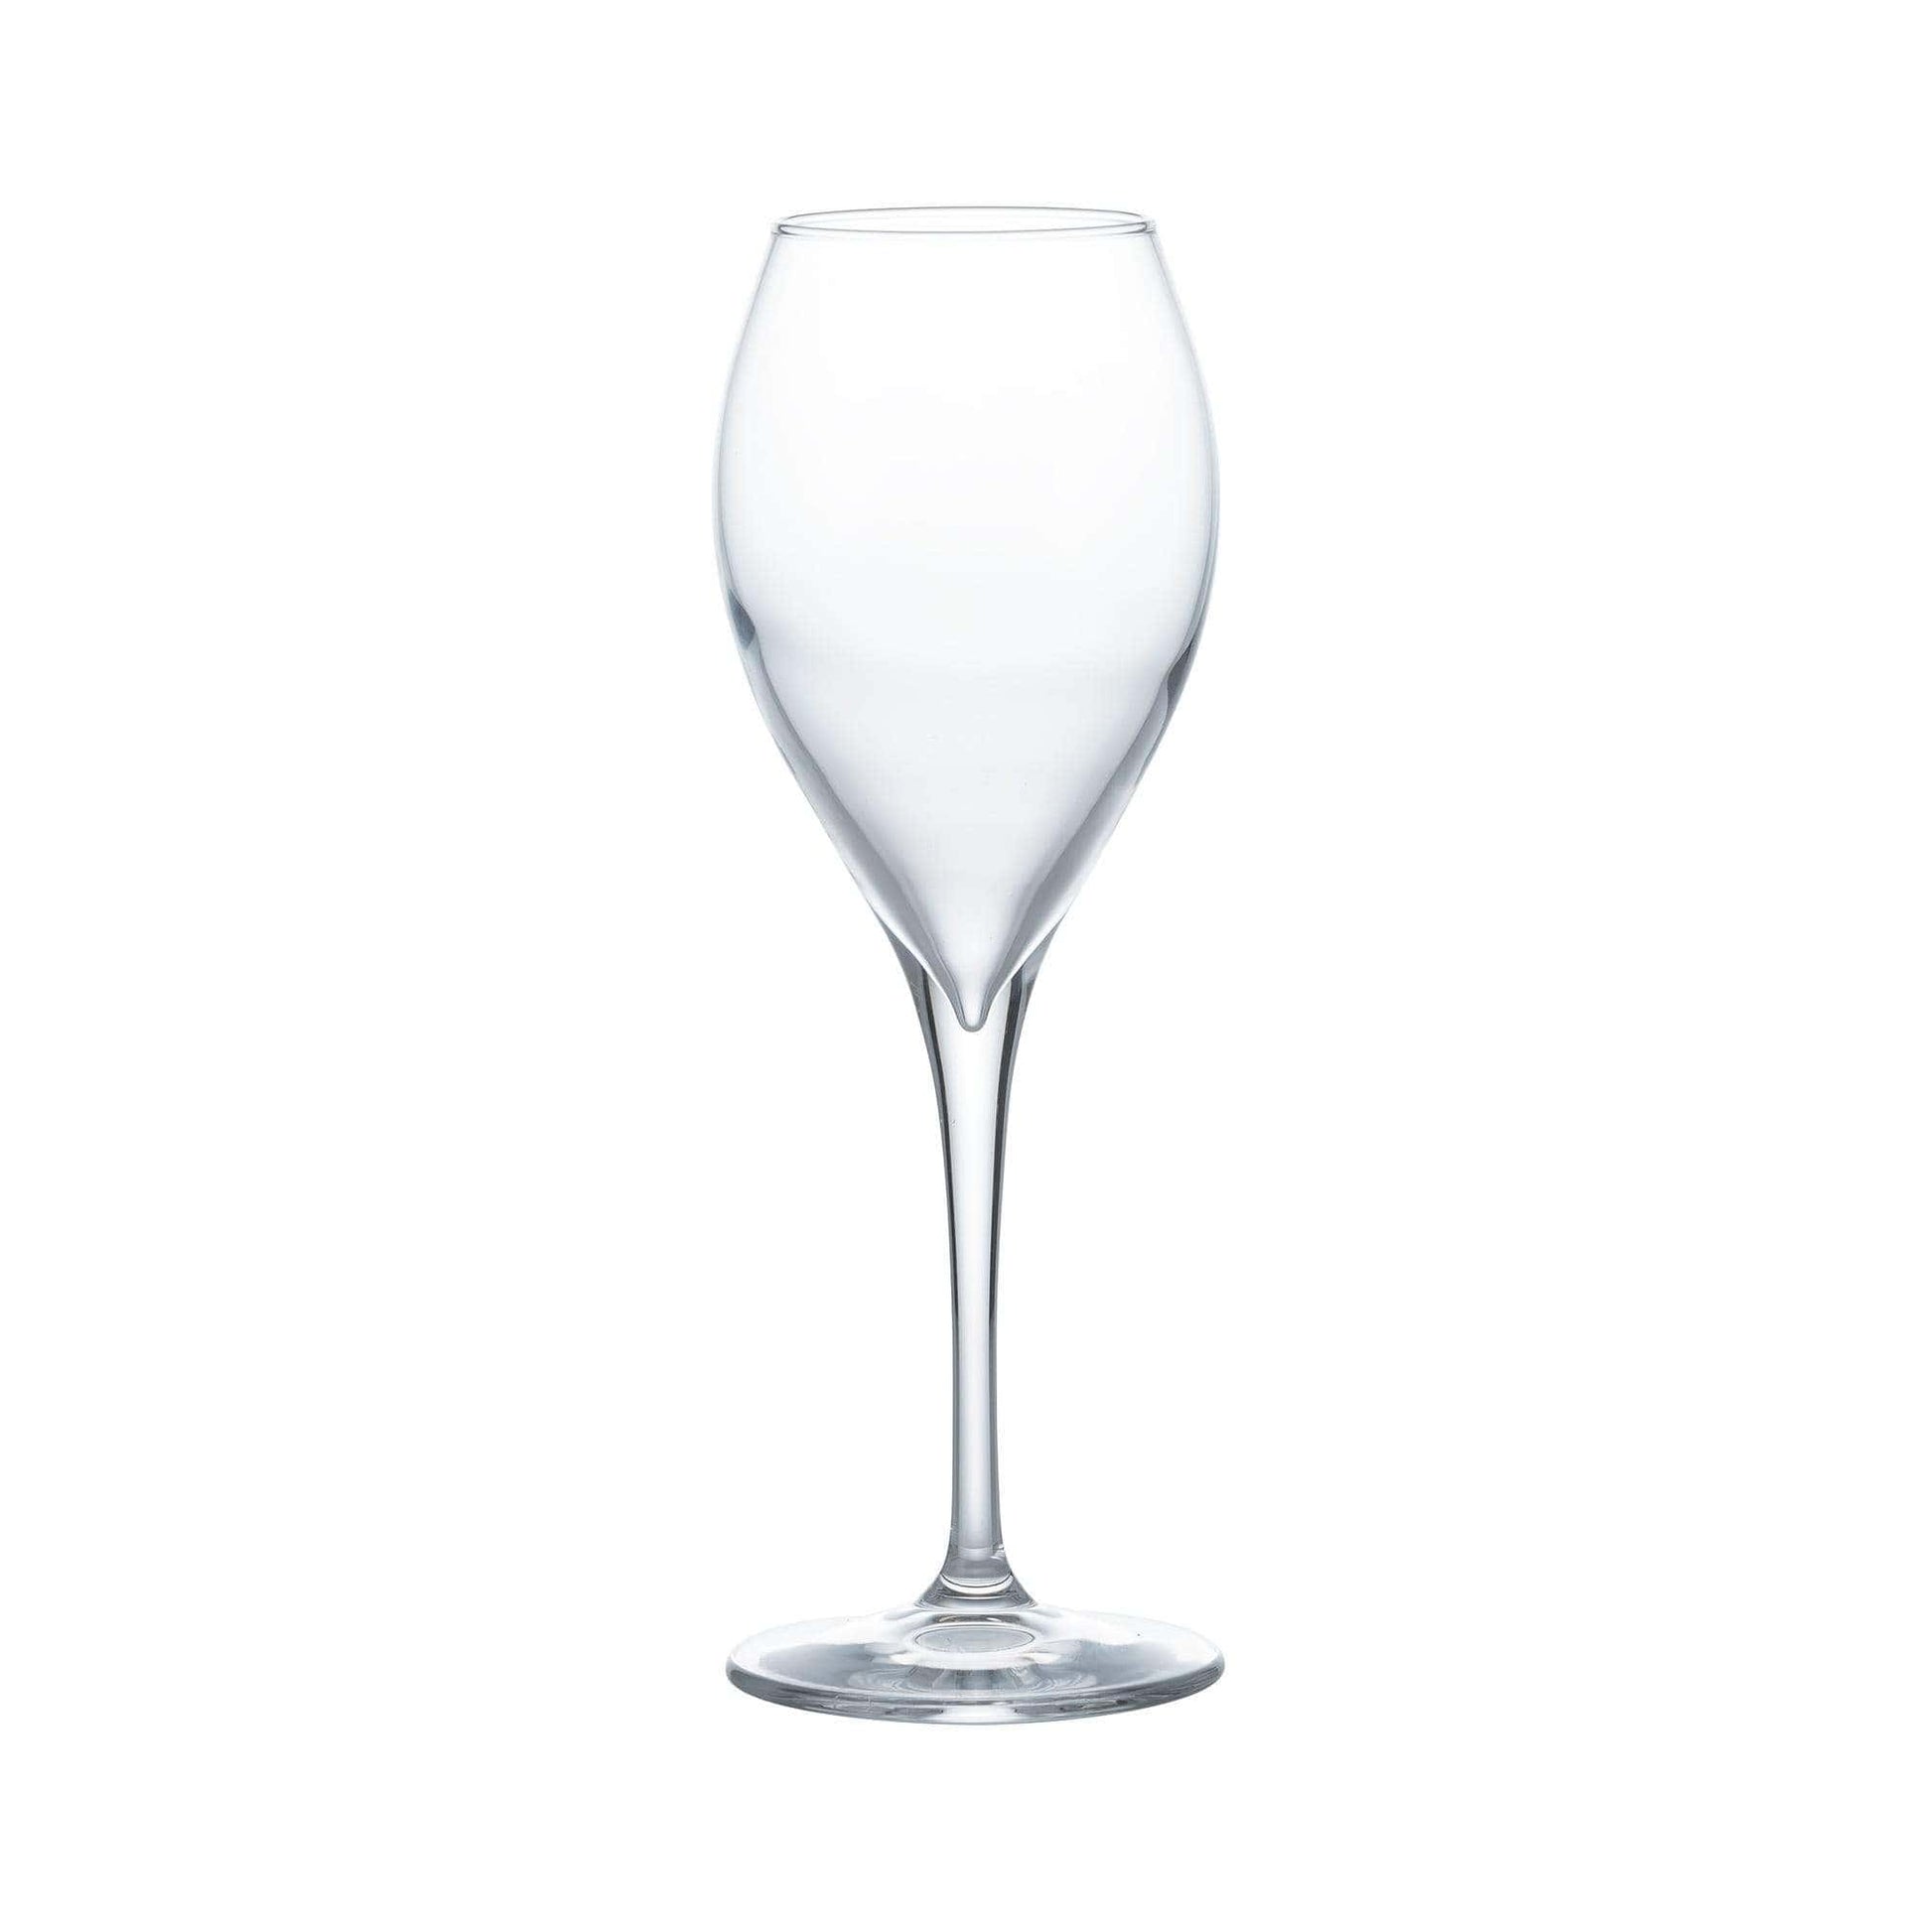 Kitchenware  -  Ravenhead Sphere Set Of 4 White Wine Glasses  -  50154041